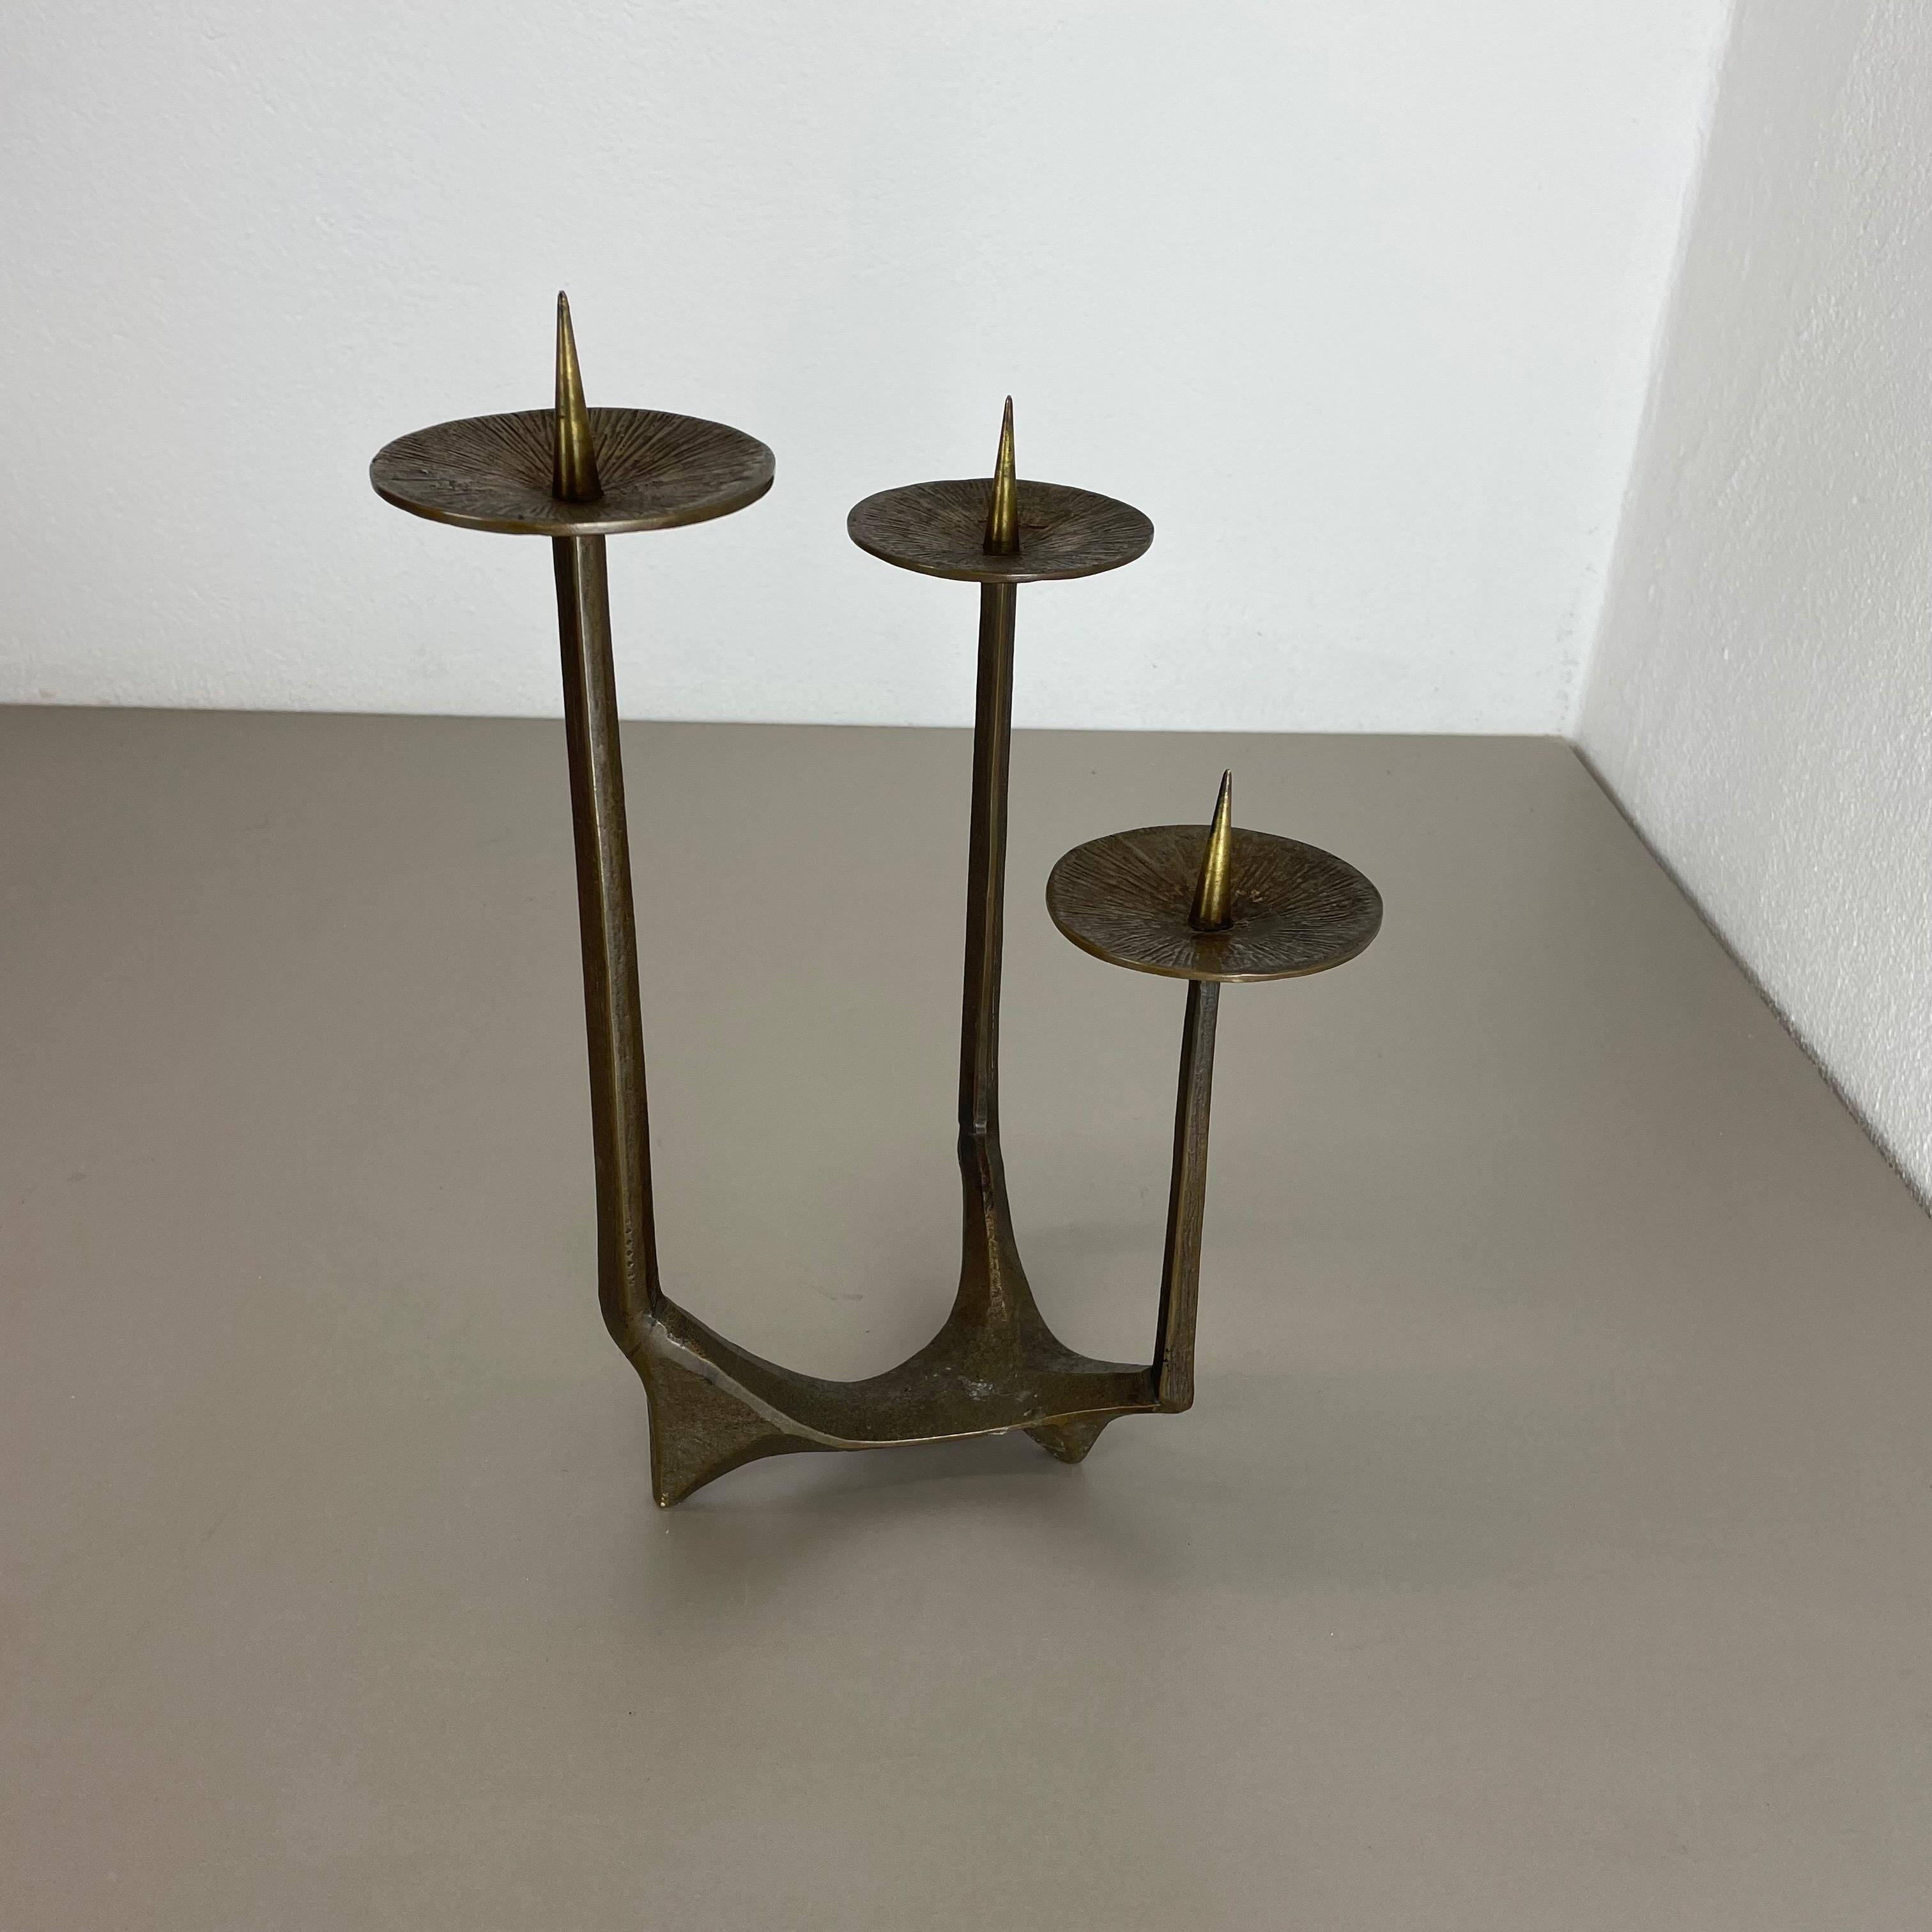 German Modernist Sculptural Brutalist Bronze Metal Candleholder, France, 1970s For Sale